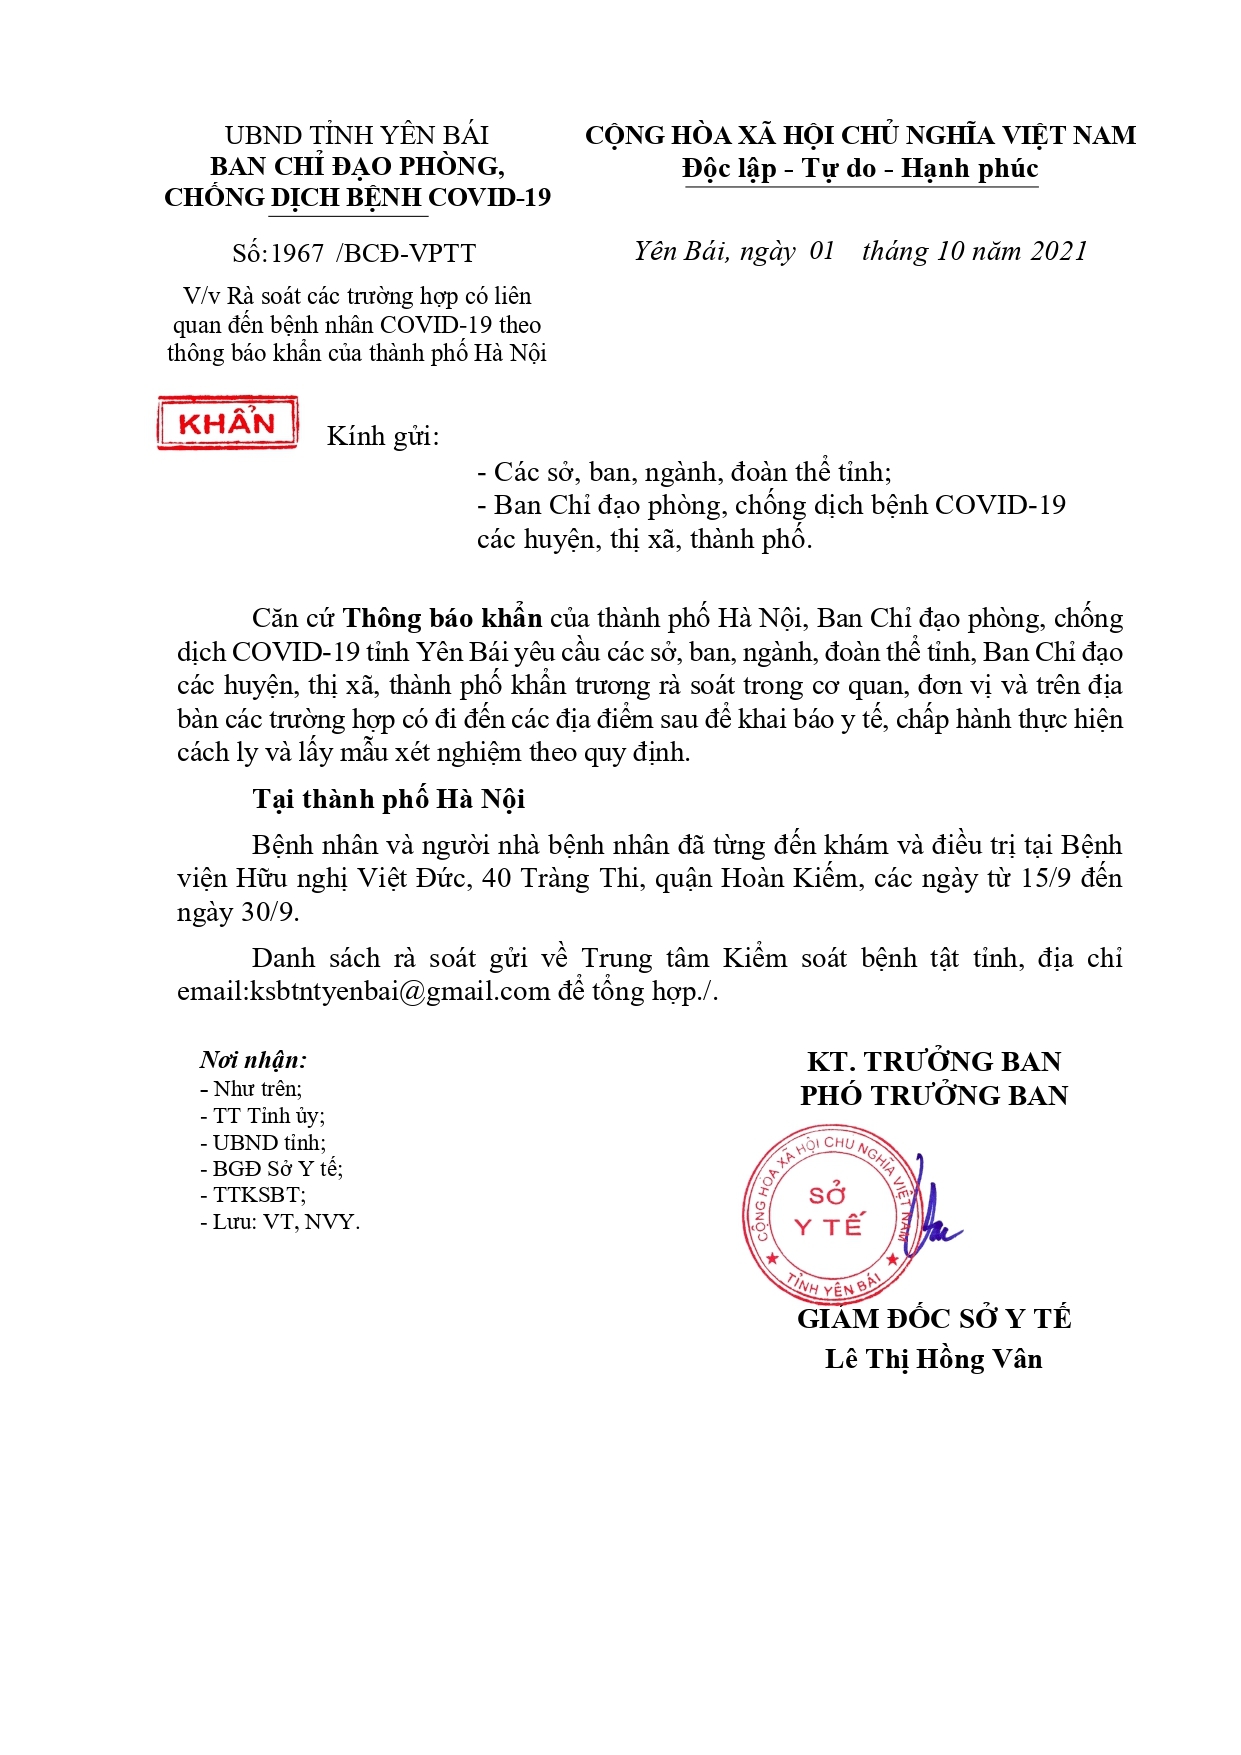 Yêu cầu rà soát các trường hợp liên quan đến bệnh nhân COVID-19 theo thông báo khẩn của thành phố Hà Nội.